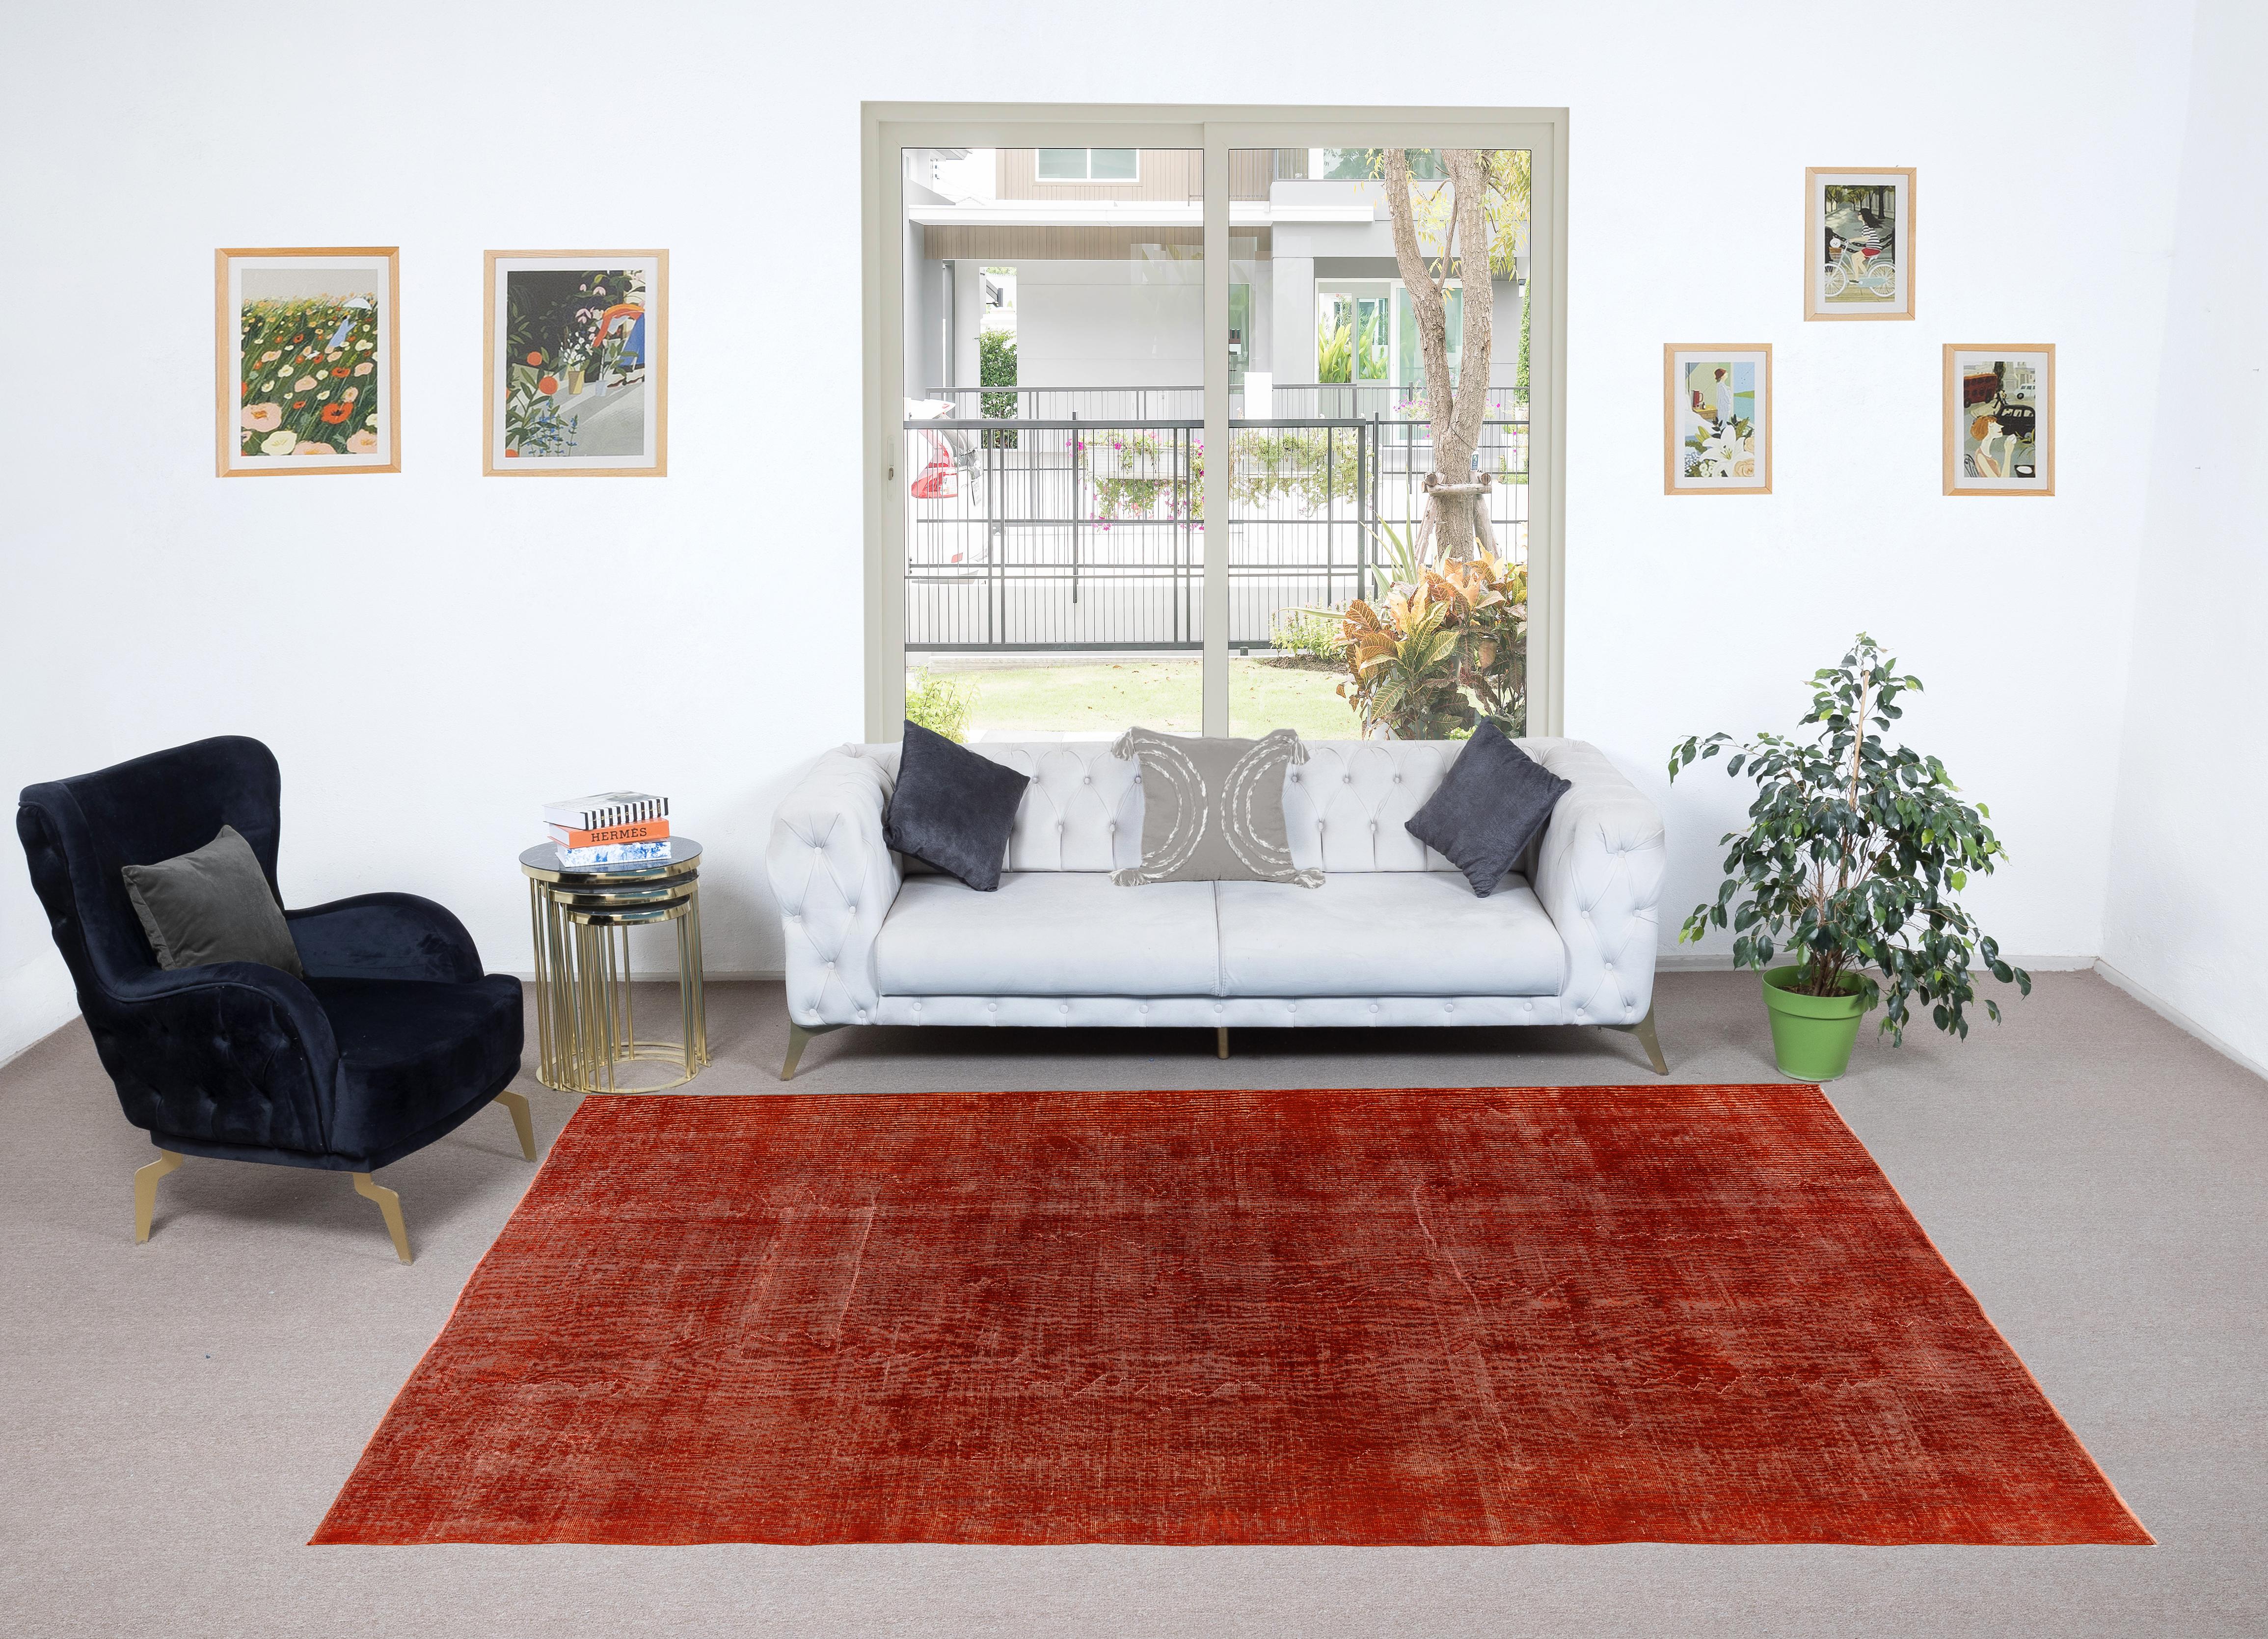 Ein türkischer Teppich im Vintage-Stil, neu gefärbt in verbranntem Orange für moderne Innenräume.
Fein handgeknüpft, niedriger Wollflor auf Baumwollbasis. Professionell gewaschen.
Robust und geeignet für stark frequentierte Bereiche, sowohl für